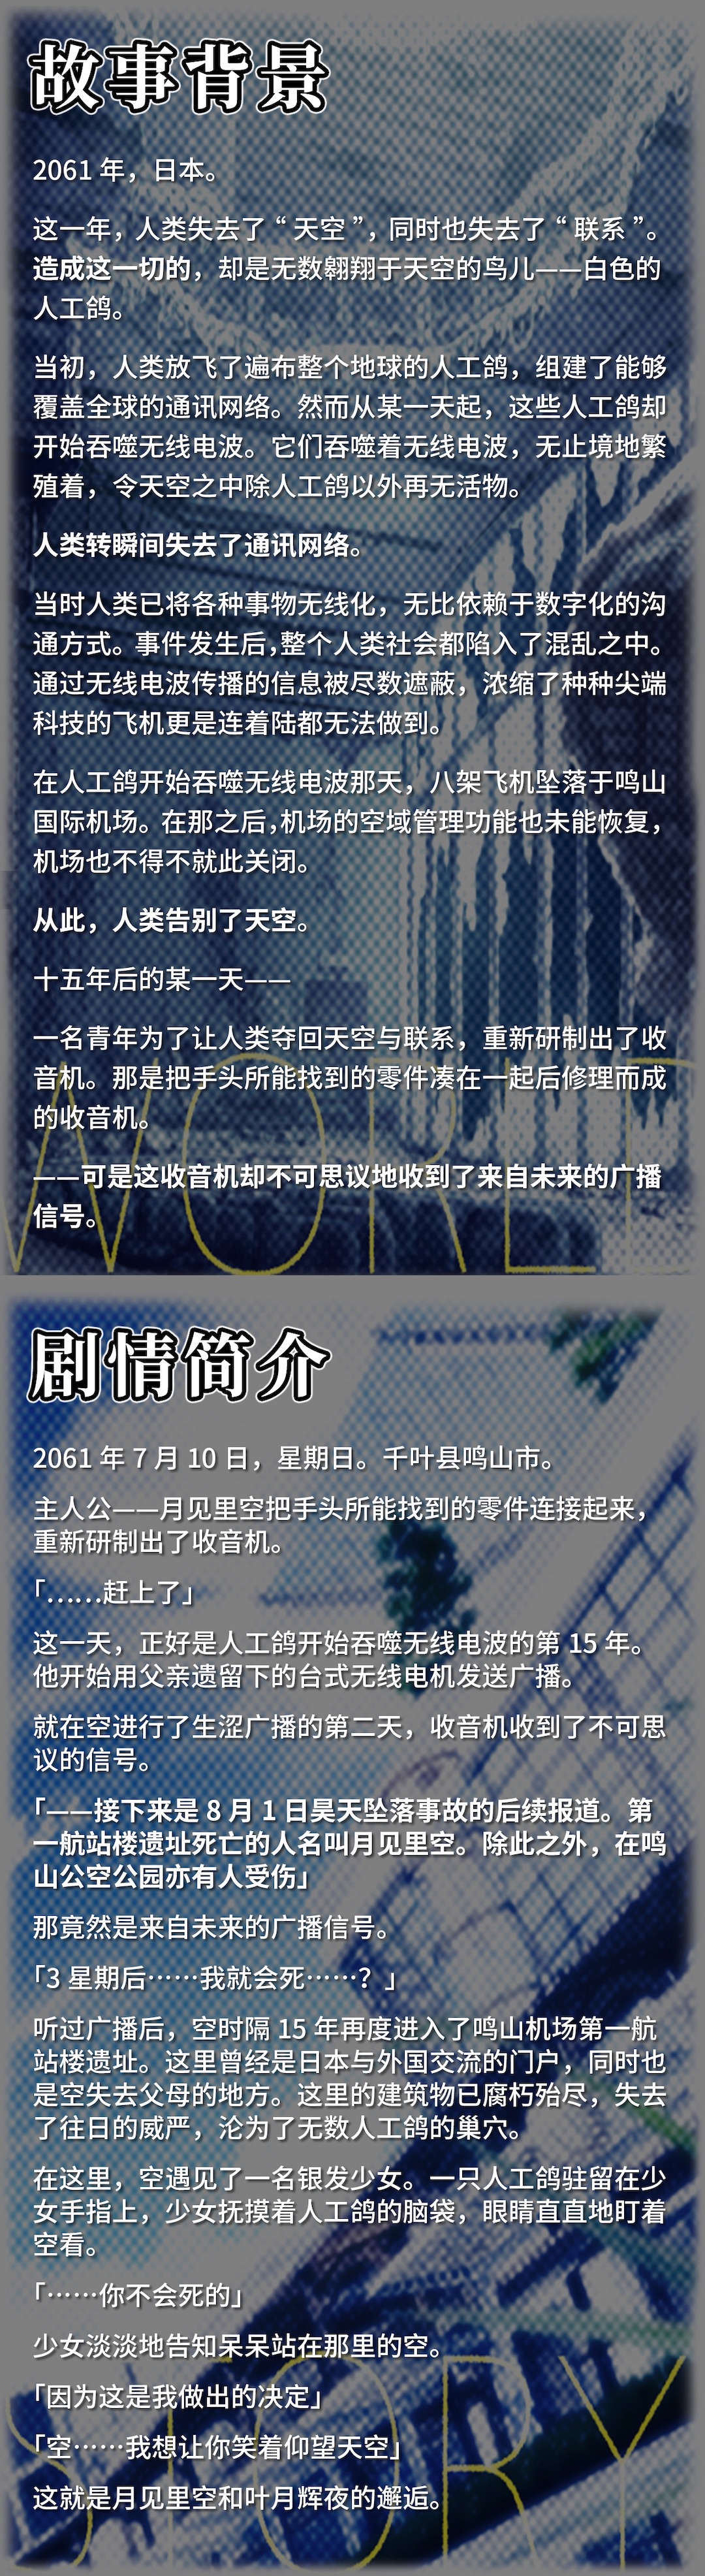 科幻題材視覺小說《未來廣播與人工鴿》中文版Steam頁面上線 2月17日發售